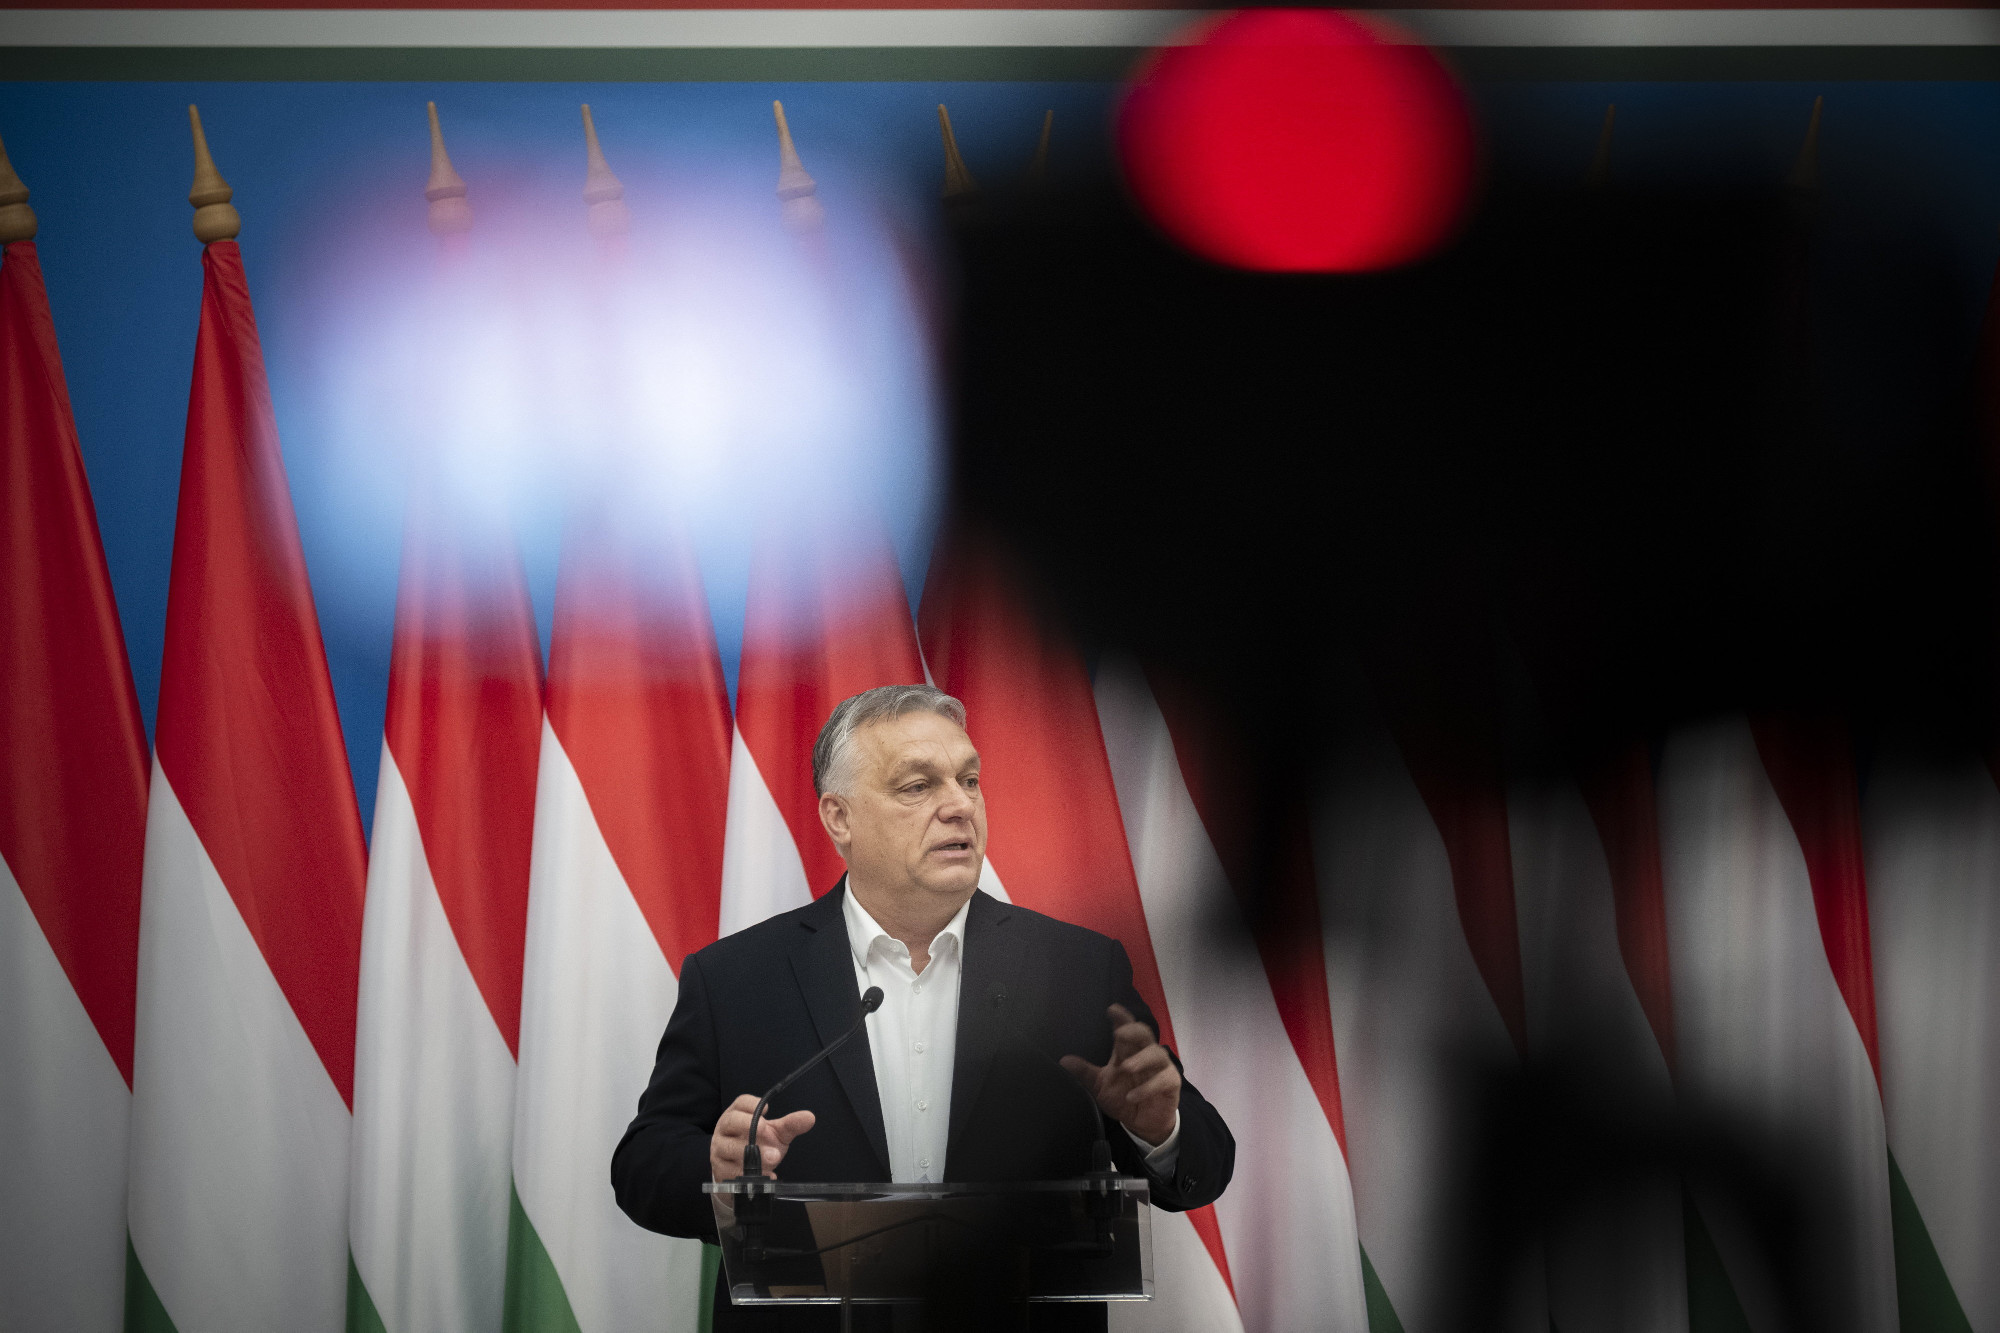 Orbán léptette elő S. Tibor rendőrt, S. Tiborról kiderült, hogy pedofil